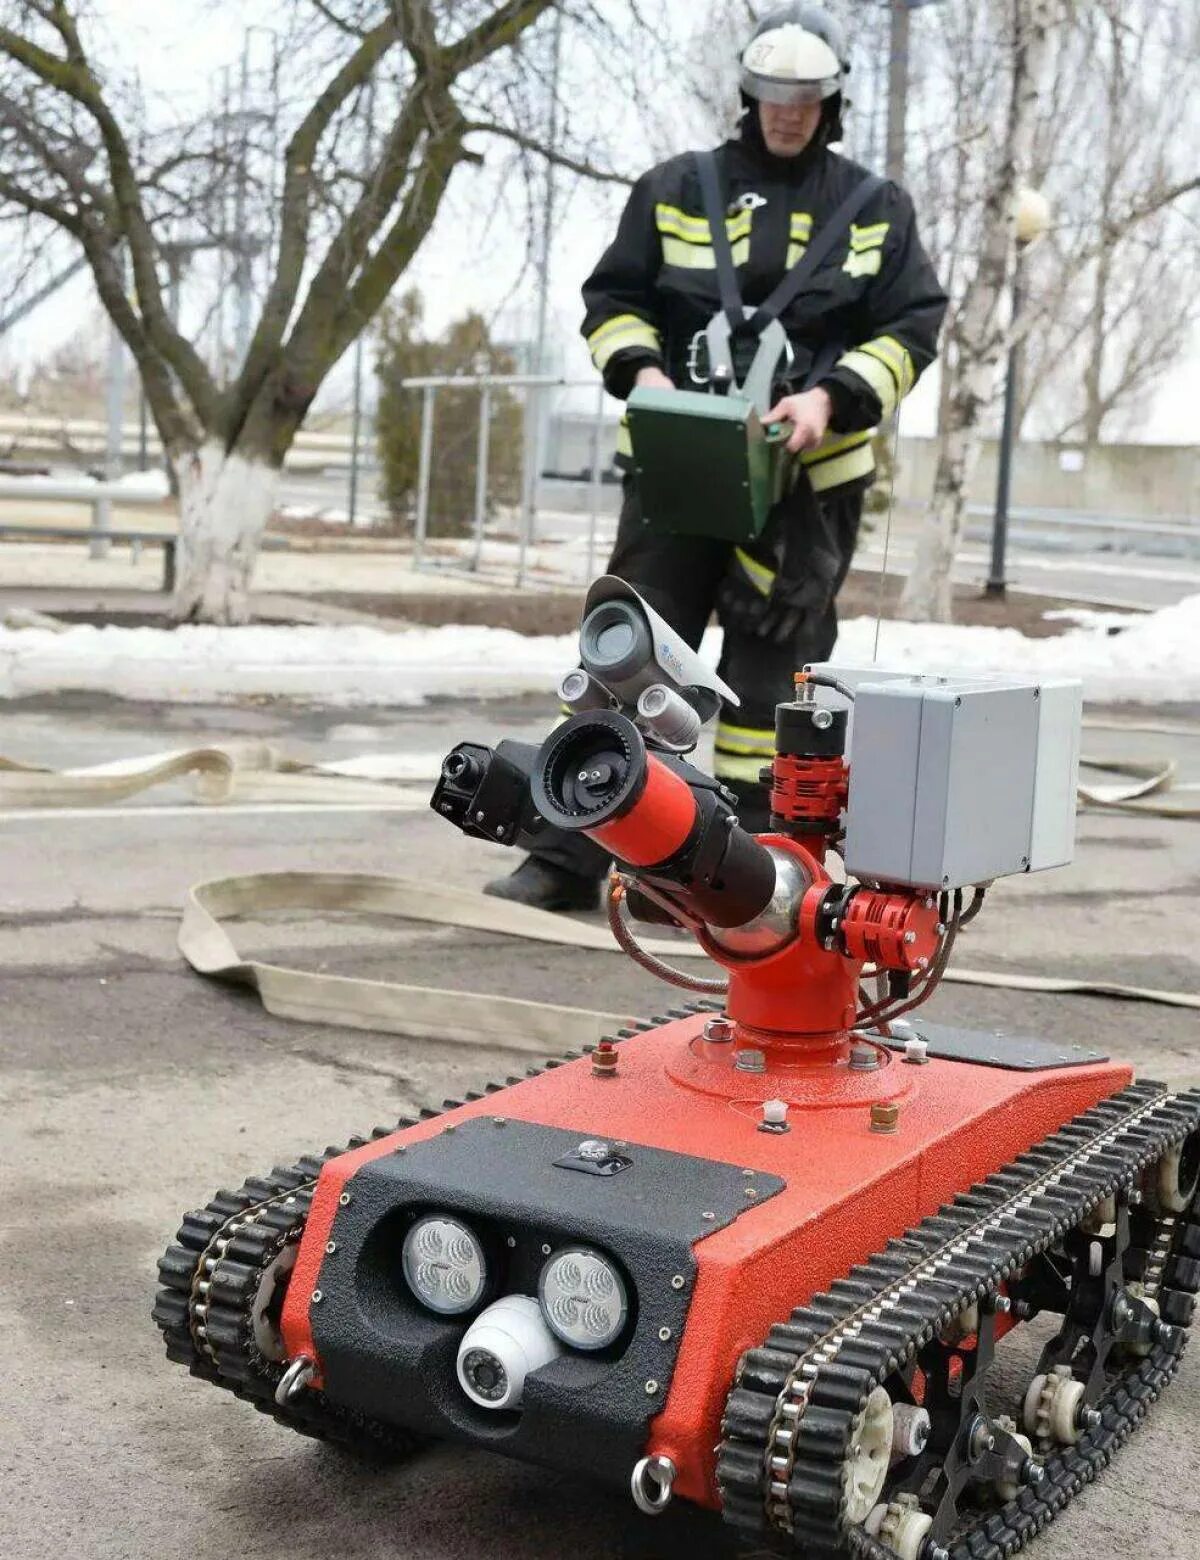 Роботы для обеспечения безопасности. Роботизированный пожарный комплекс taf20. Радиоуправляемый робототехнический комплекс пожаротушения кедр. Робот пожаротушения Прометей. Мобильные роботизированные противопожарные комплексы (МРК-П).